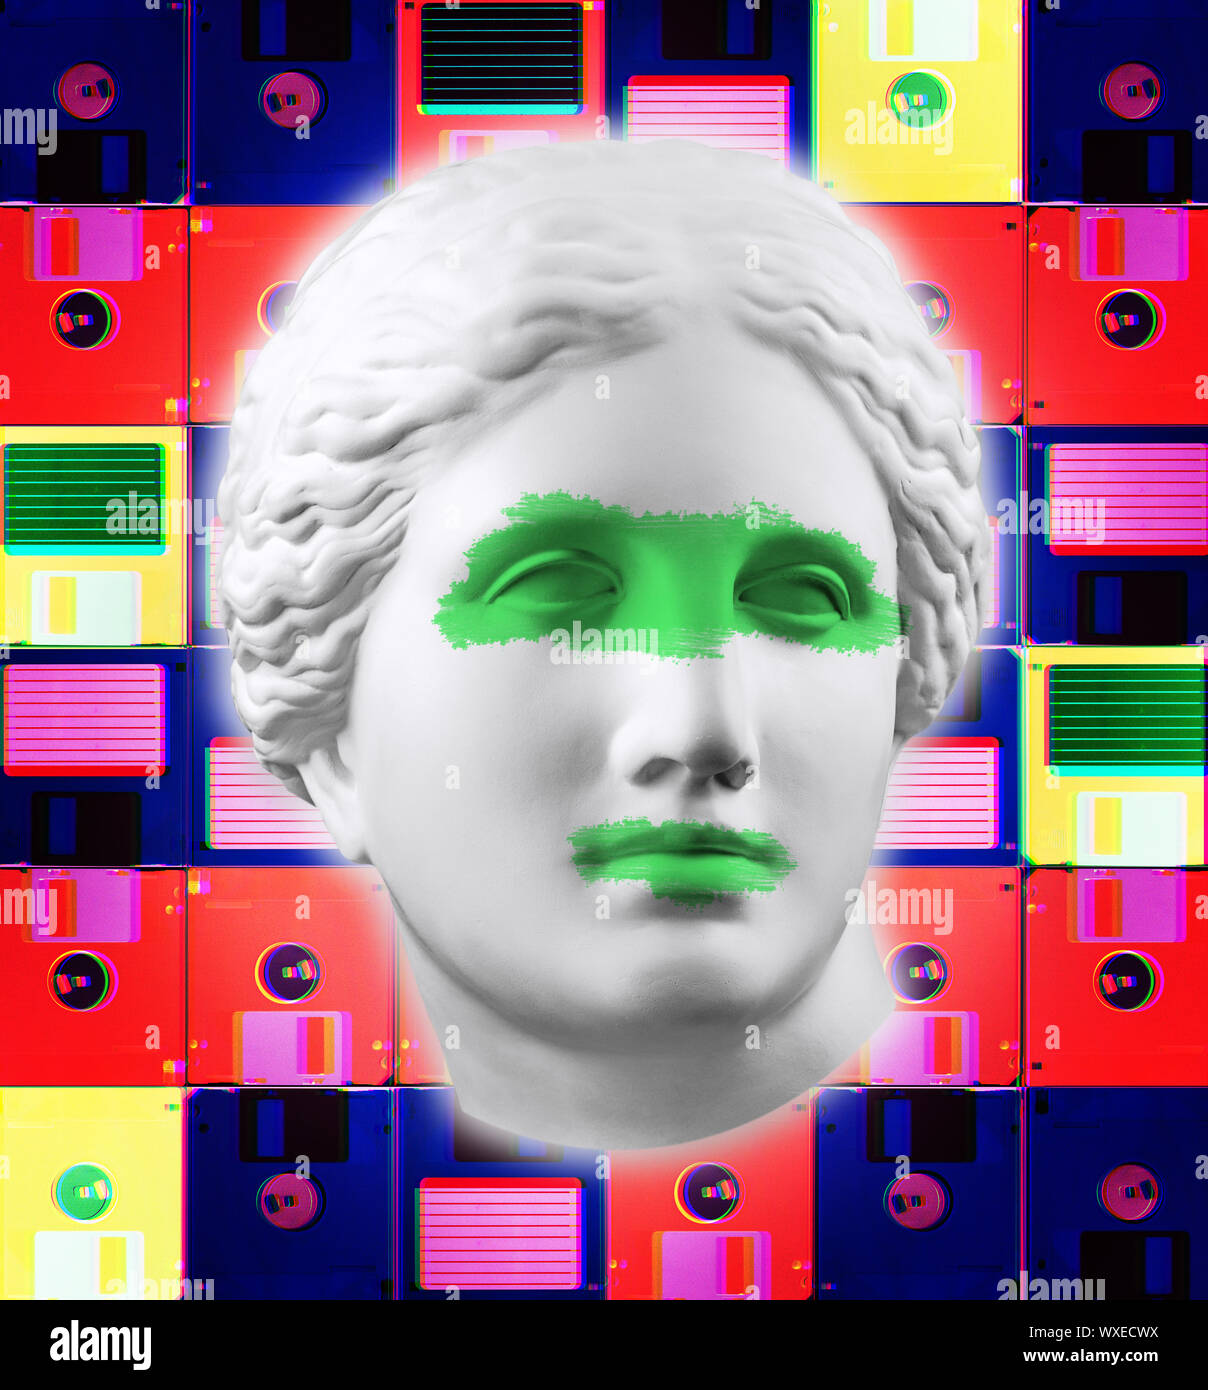 L'art conceptuel moderne face à l'affiche de la statue antique et disquette. Collage de l'art contemporain. Banque D'Images